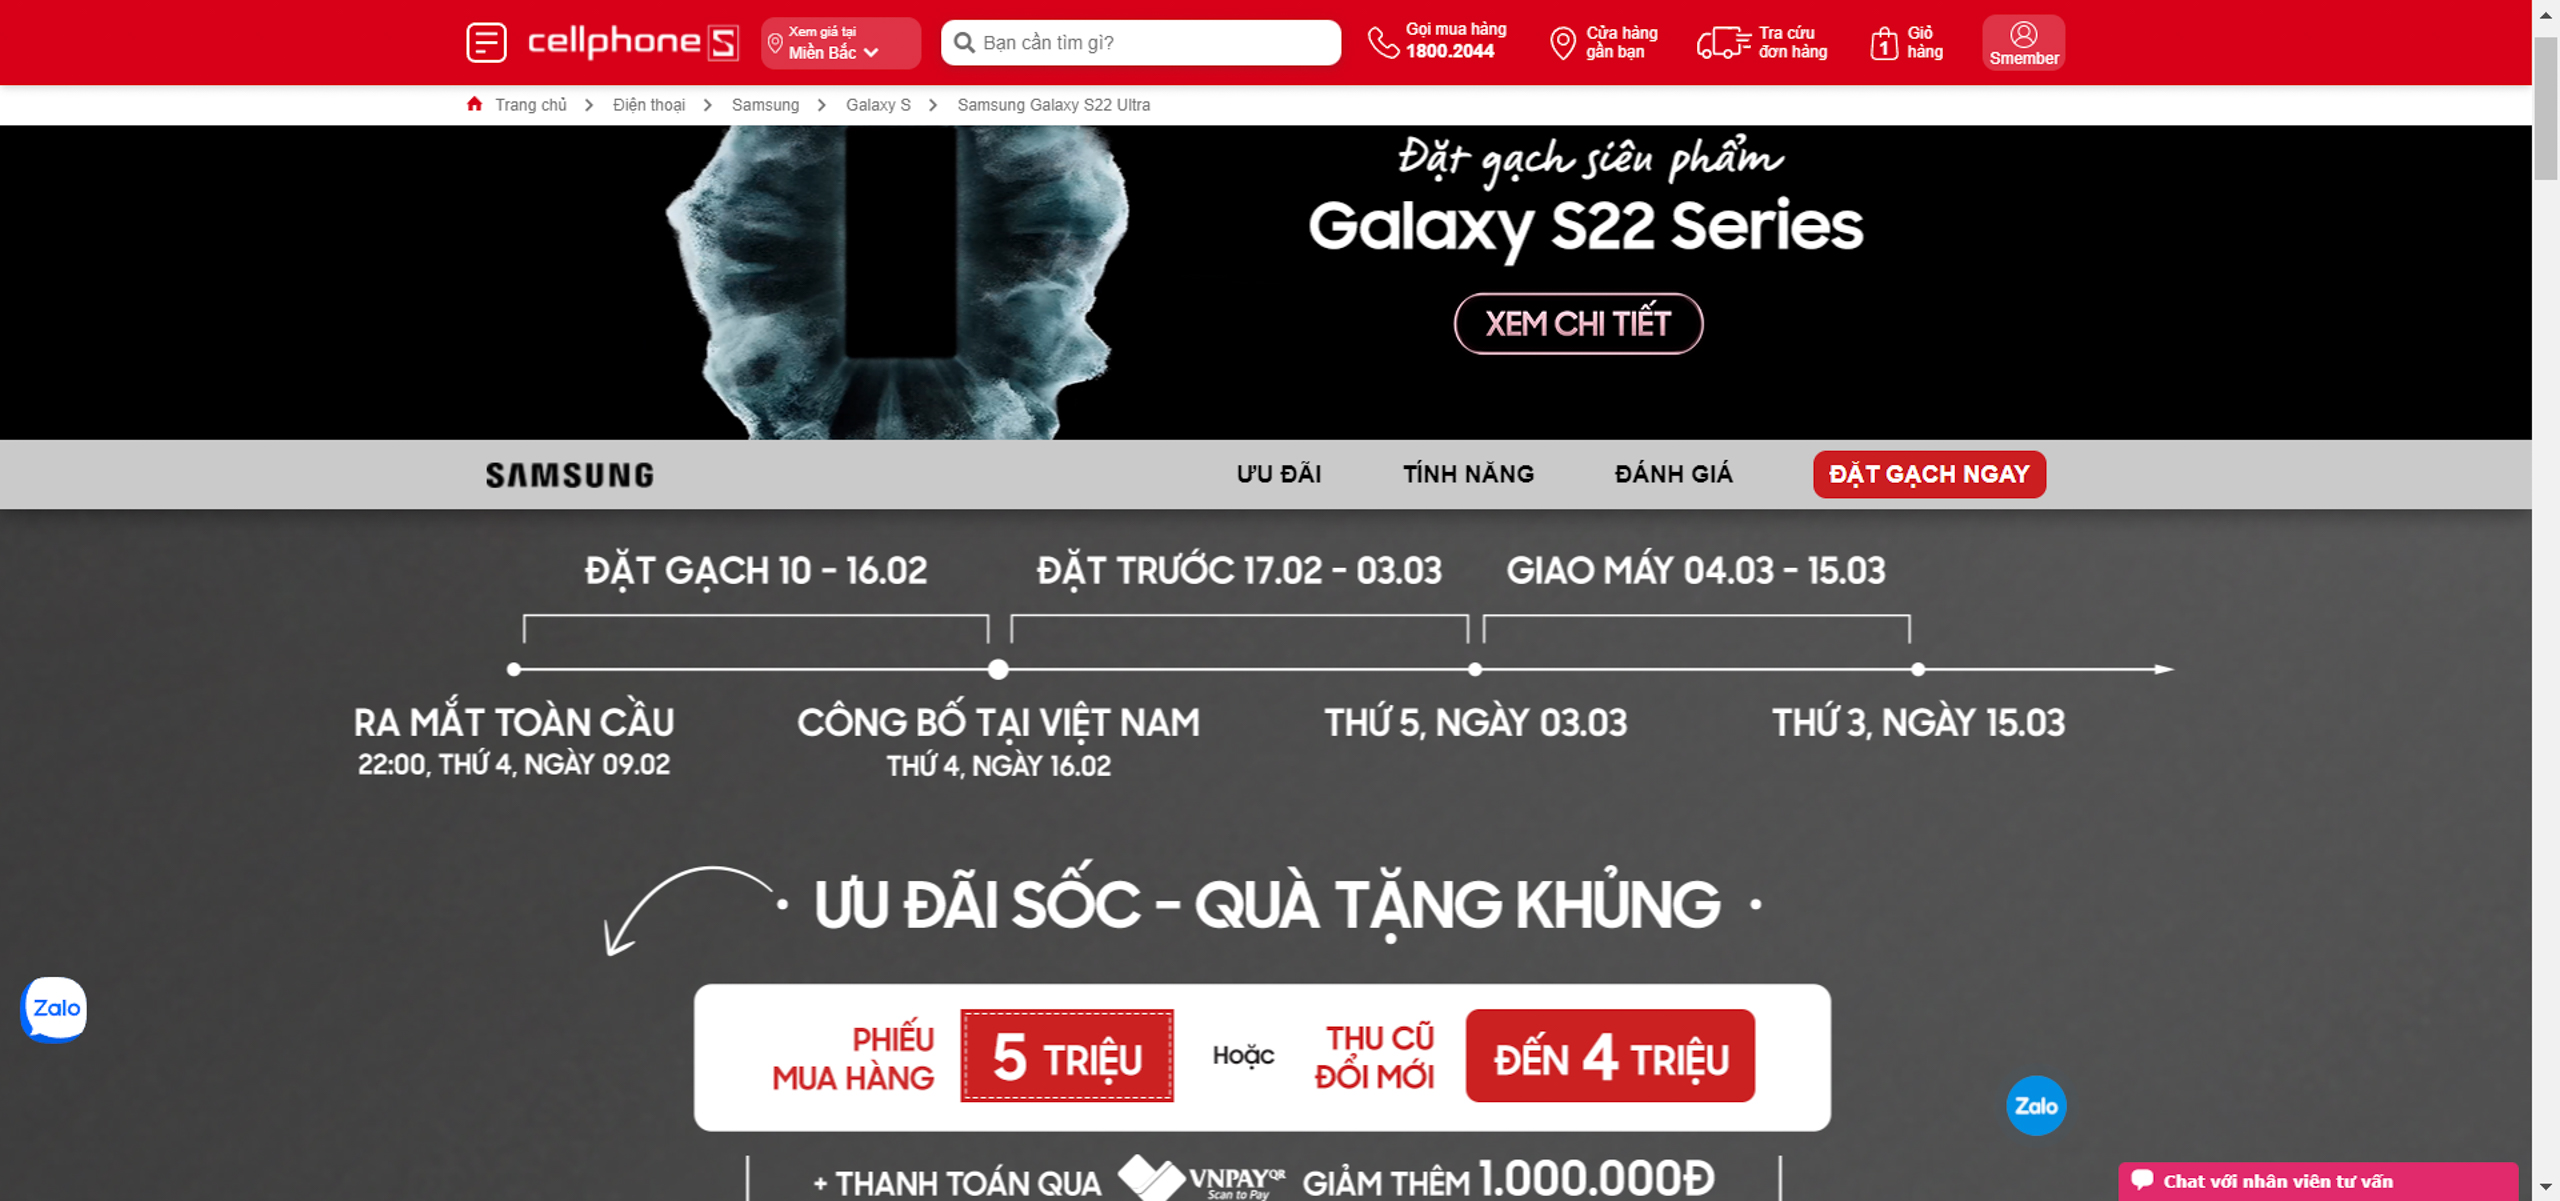 Galaxy S22 series ra mắt, nhà bán lẻ kế hoạch tăng trưởng bùng nổ 300%